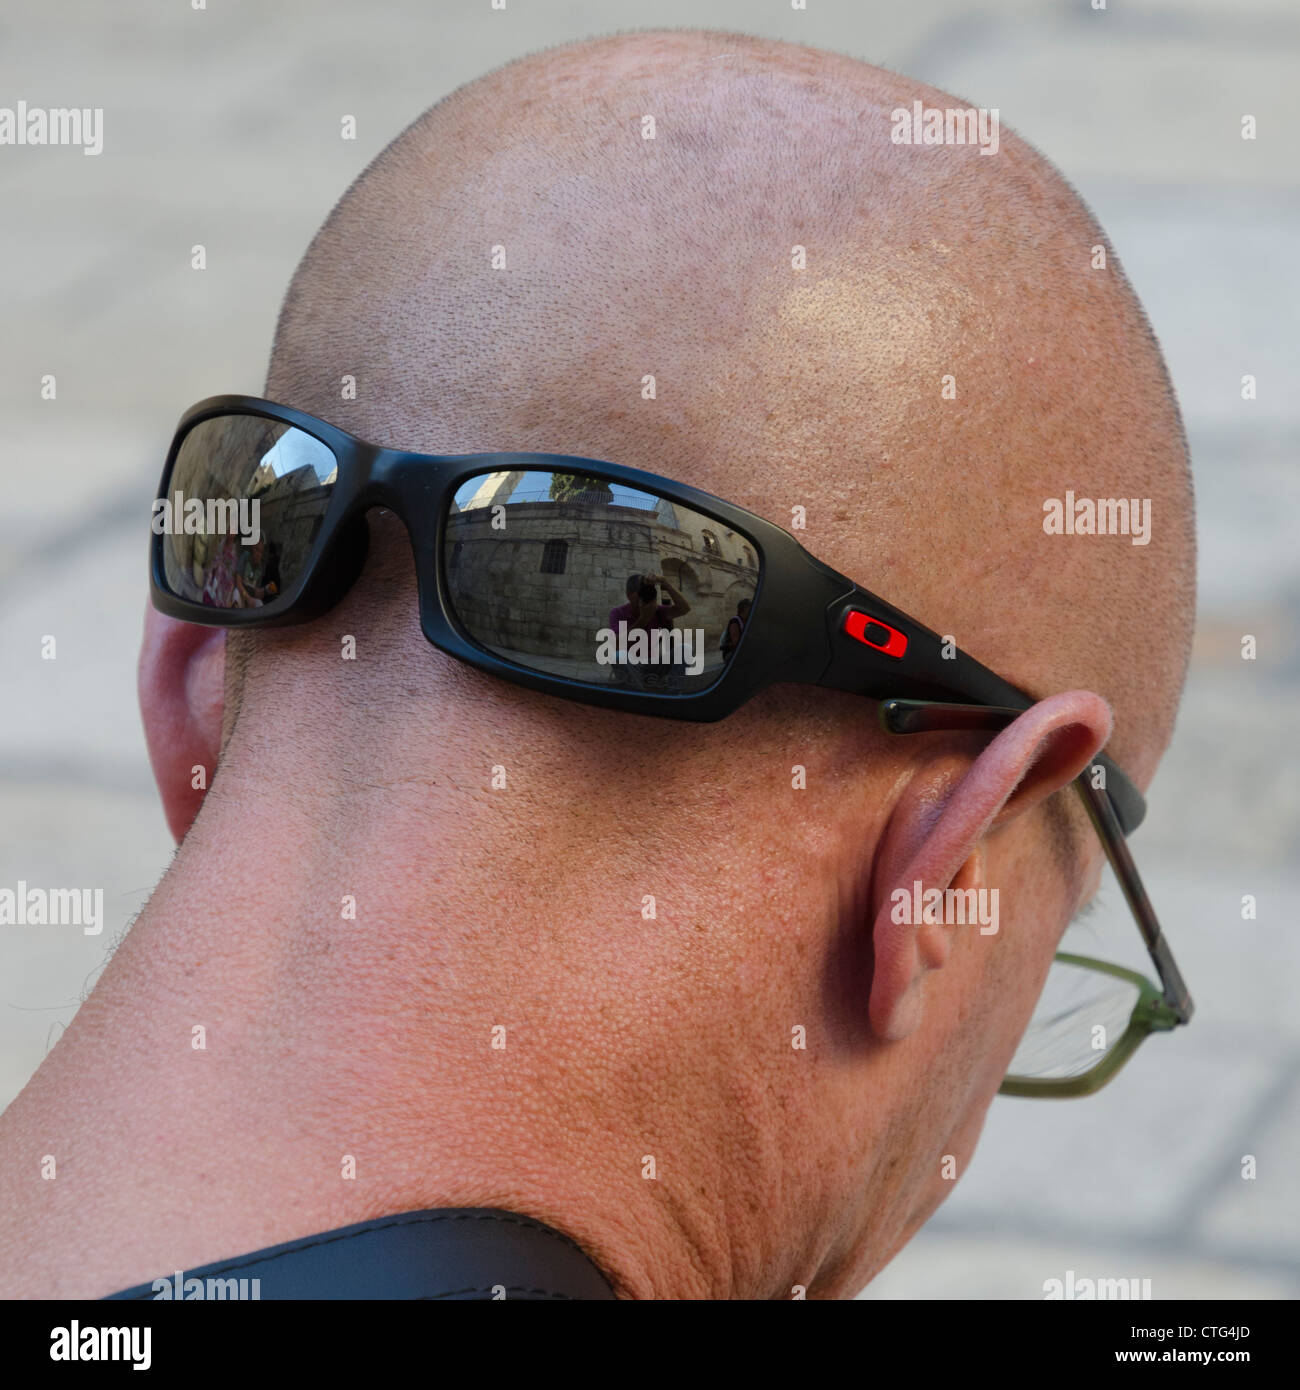 Portrait d'un homme portant des lunettes de soleil à l'envers. Jérusalem. Israël. Banque D'Images